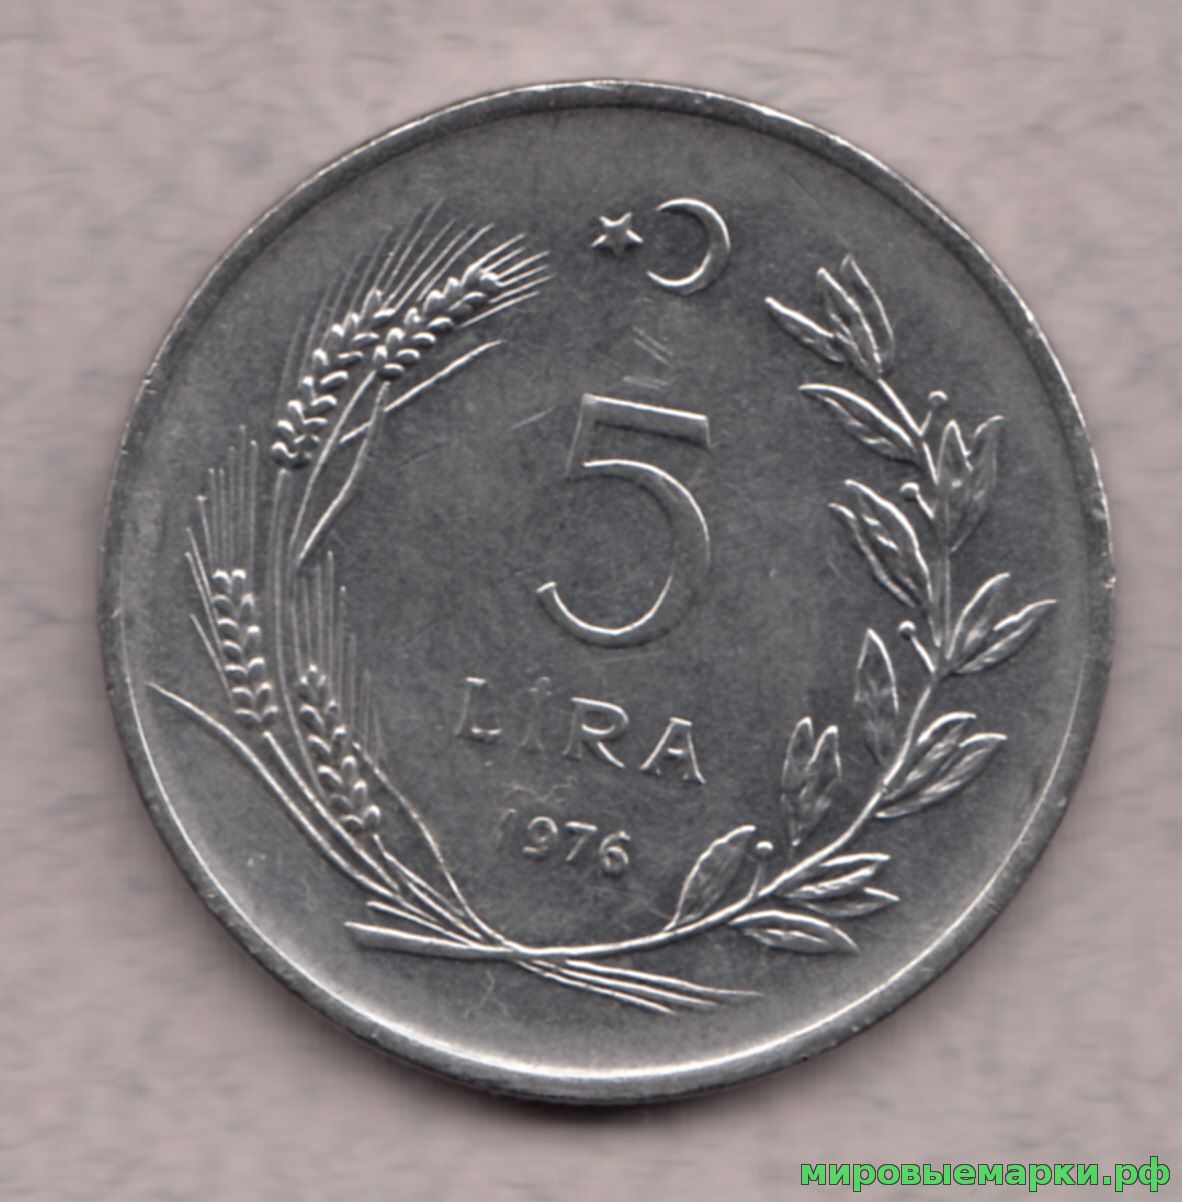 Турция 1970-е 5 лир, UNC(мешковые)